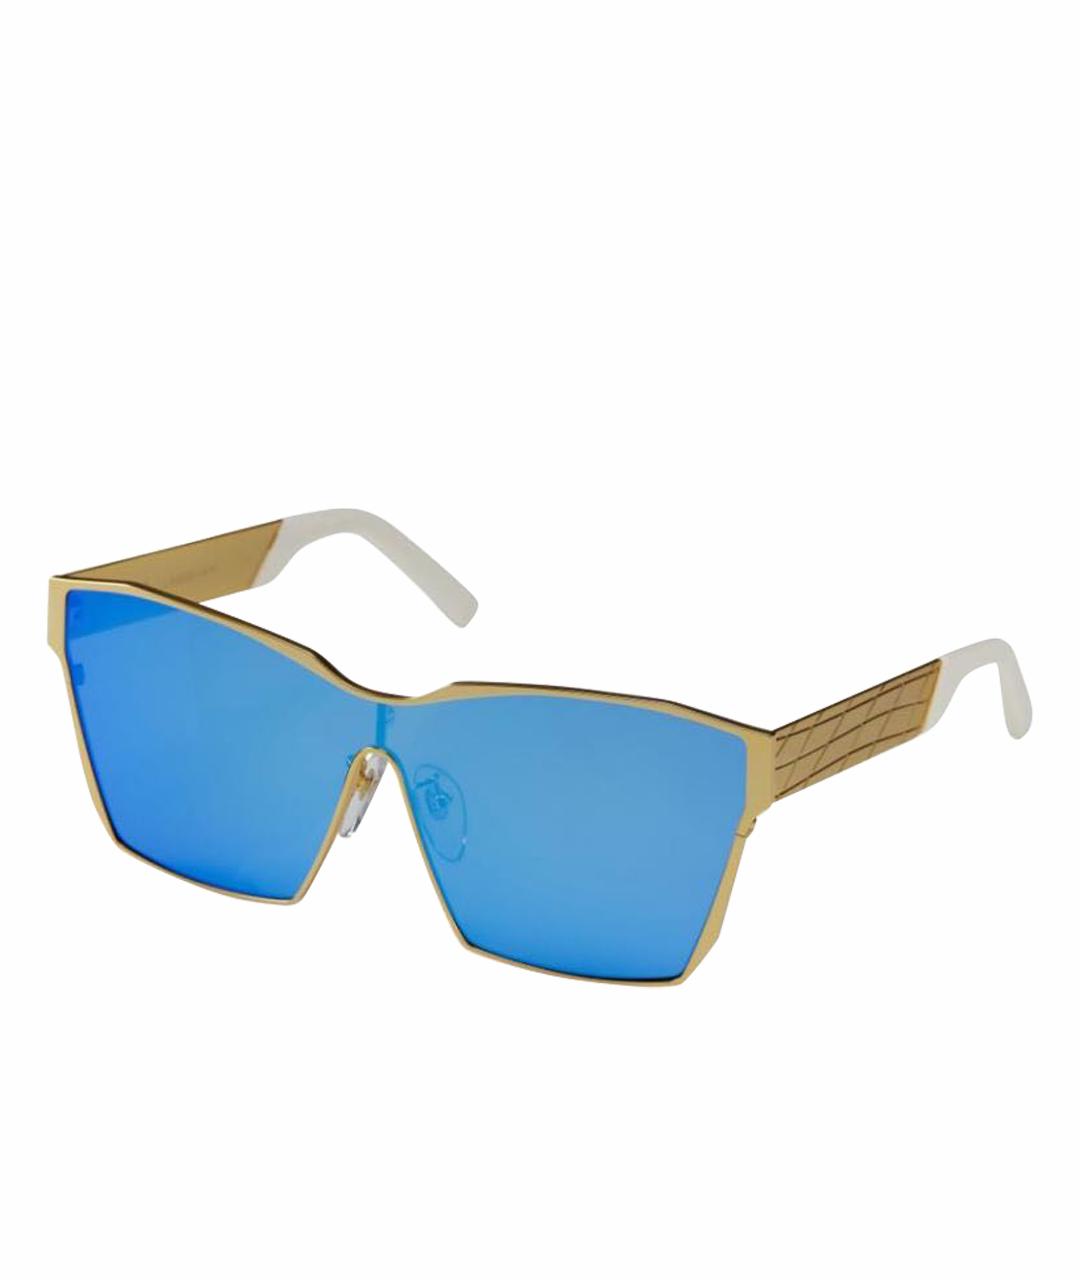 IRRESISTOR Синие металлические солнцезащитные очки, фото 1